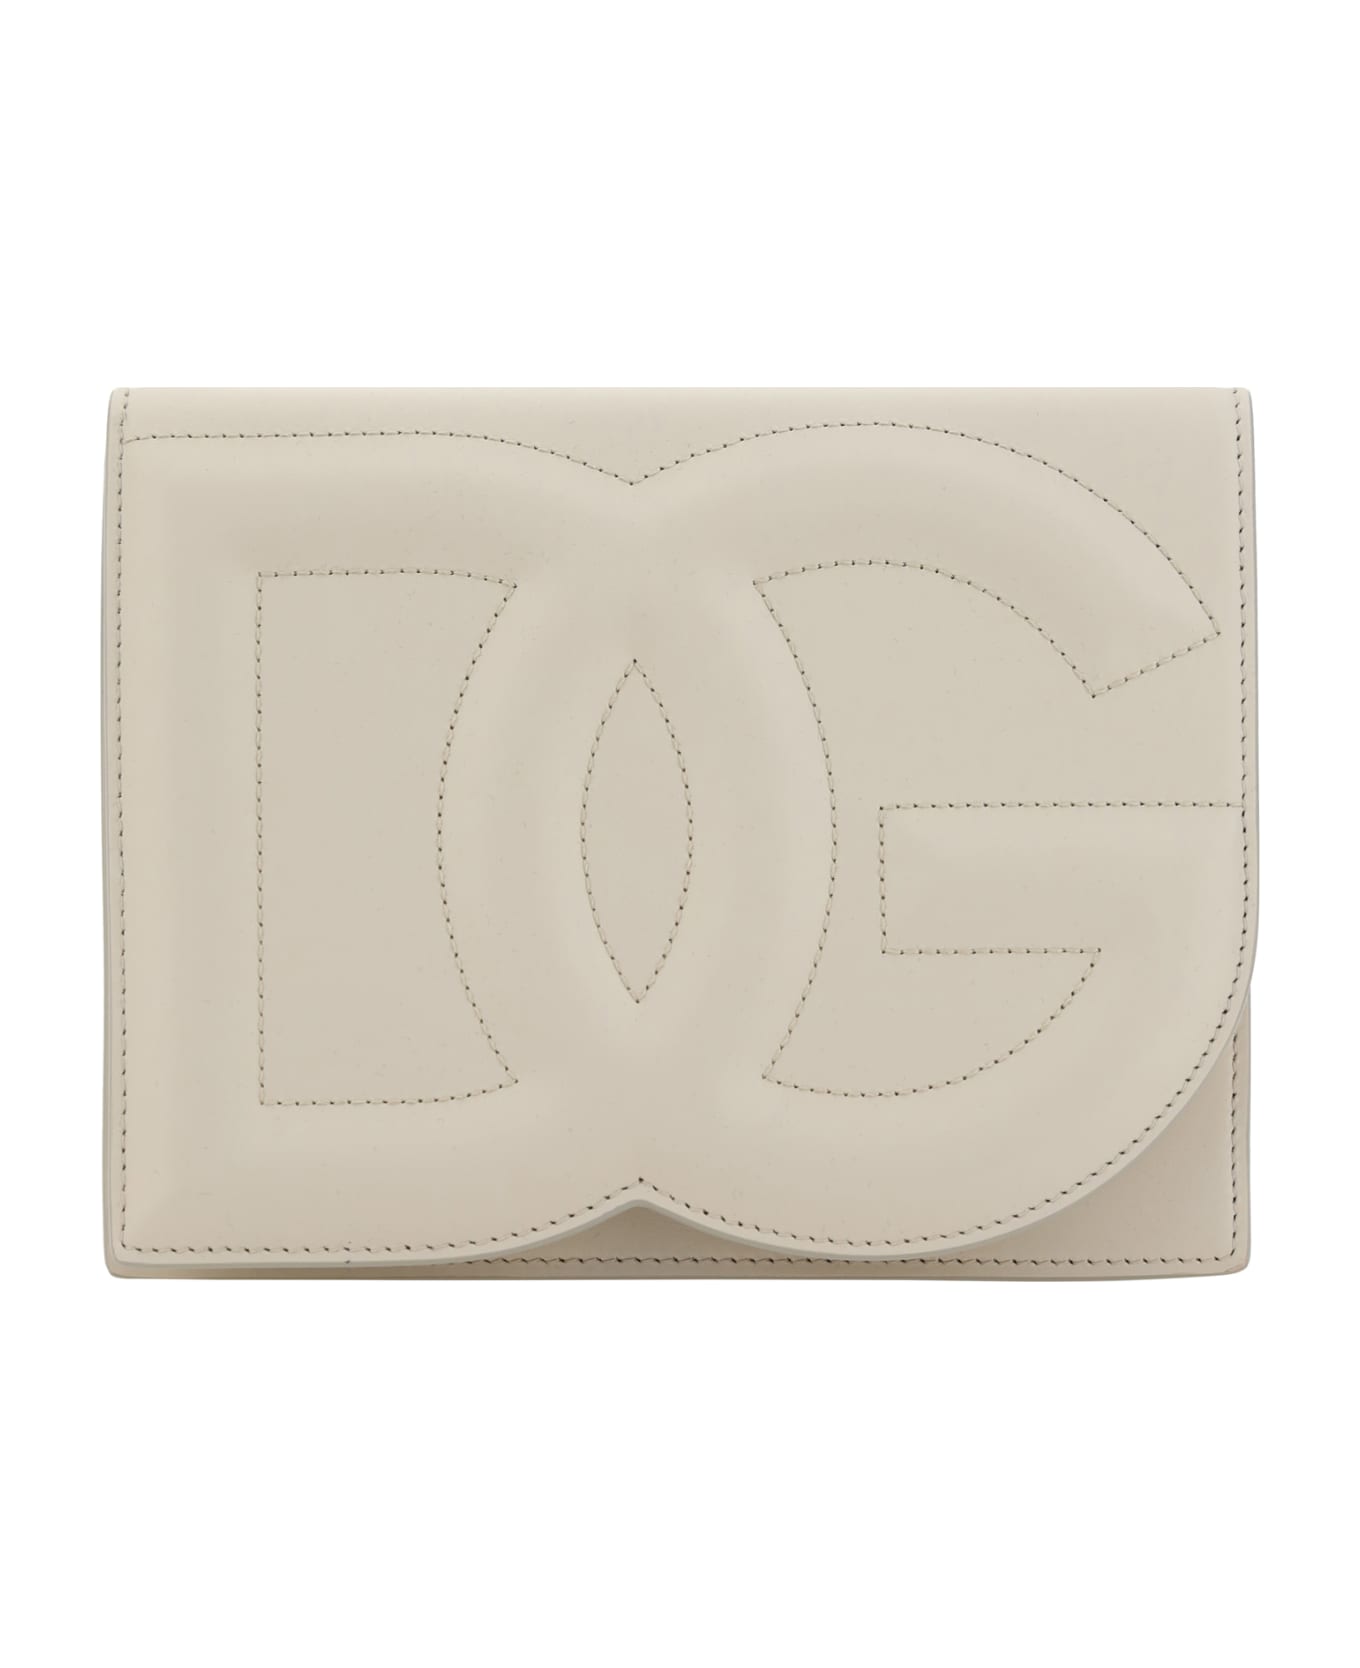 Dolce & Gabbana Dg Embossed Shoulder Bag - Avorio クラッチバッグ